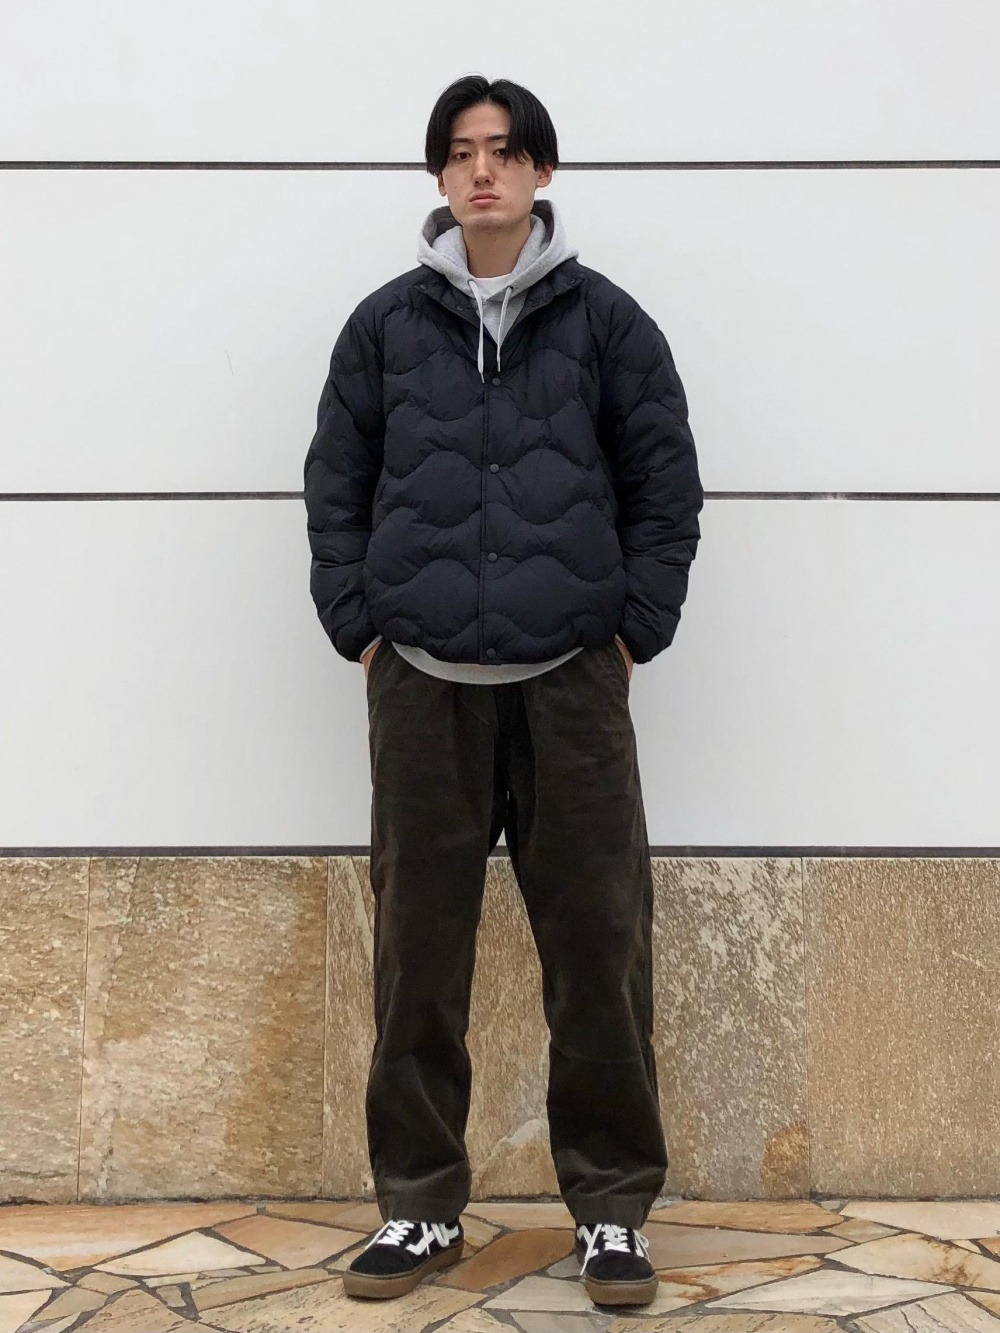 「スフレヤーンハーフジップセーター（長袖）、ウルトラライトダウンウェーブキルトジャケット」の着用コーディネート| ユニクロ